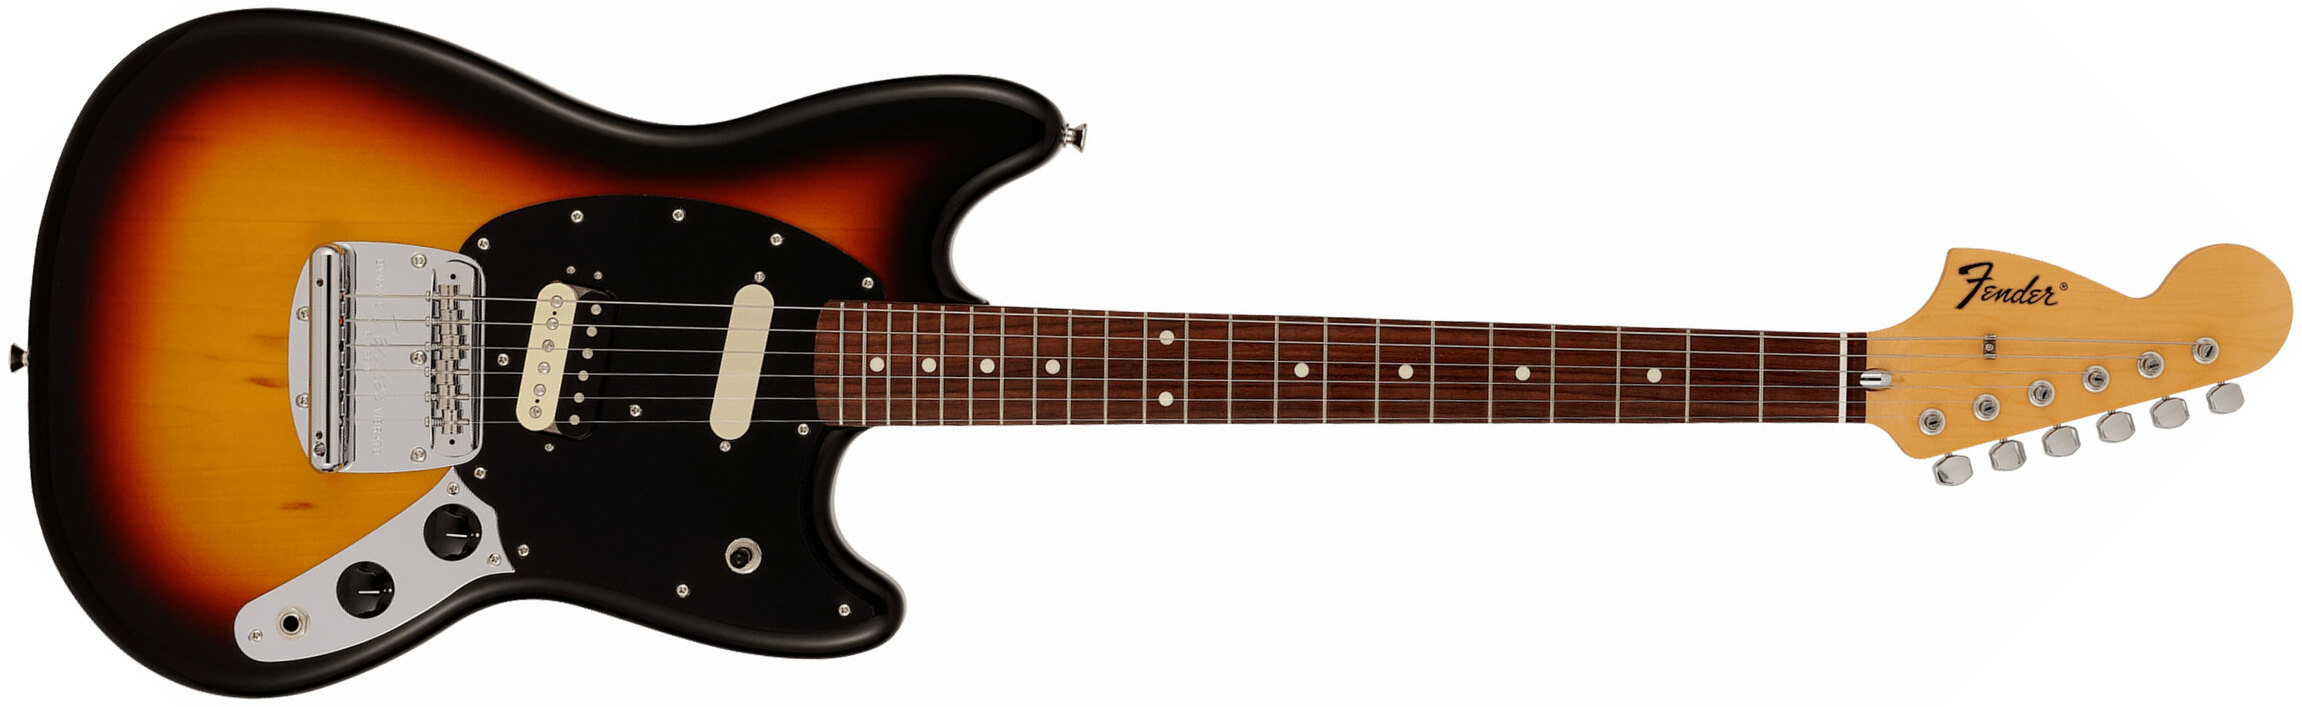 Fender Mustang Reverse Headstock Traditional Ltd Jap Hs Trem Rw - 3-color Sunburst - Guitare Électrique Forme Str - Main picture